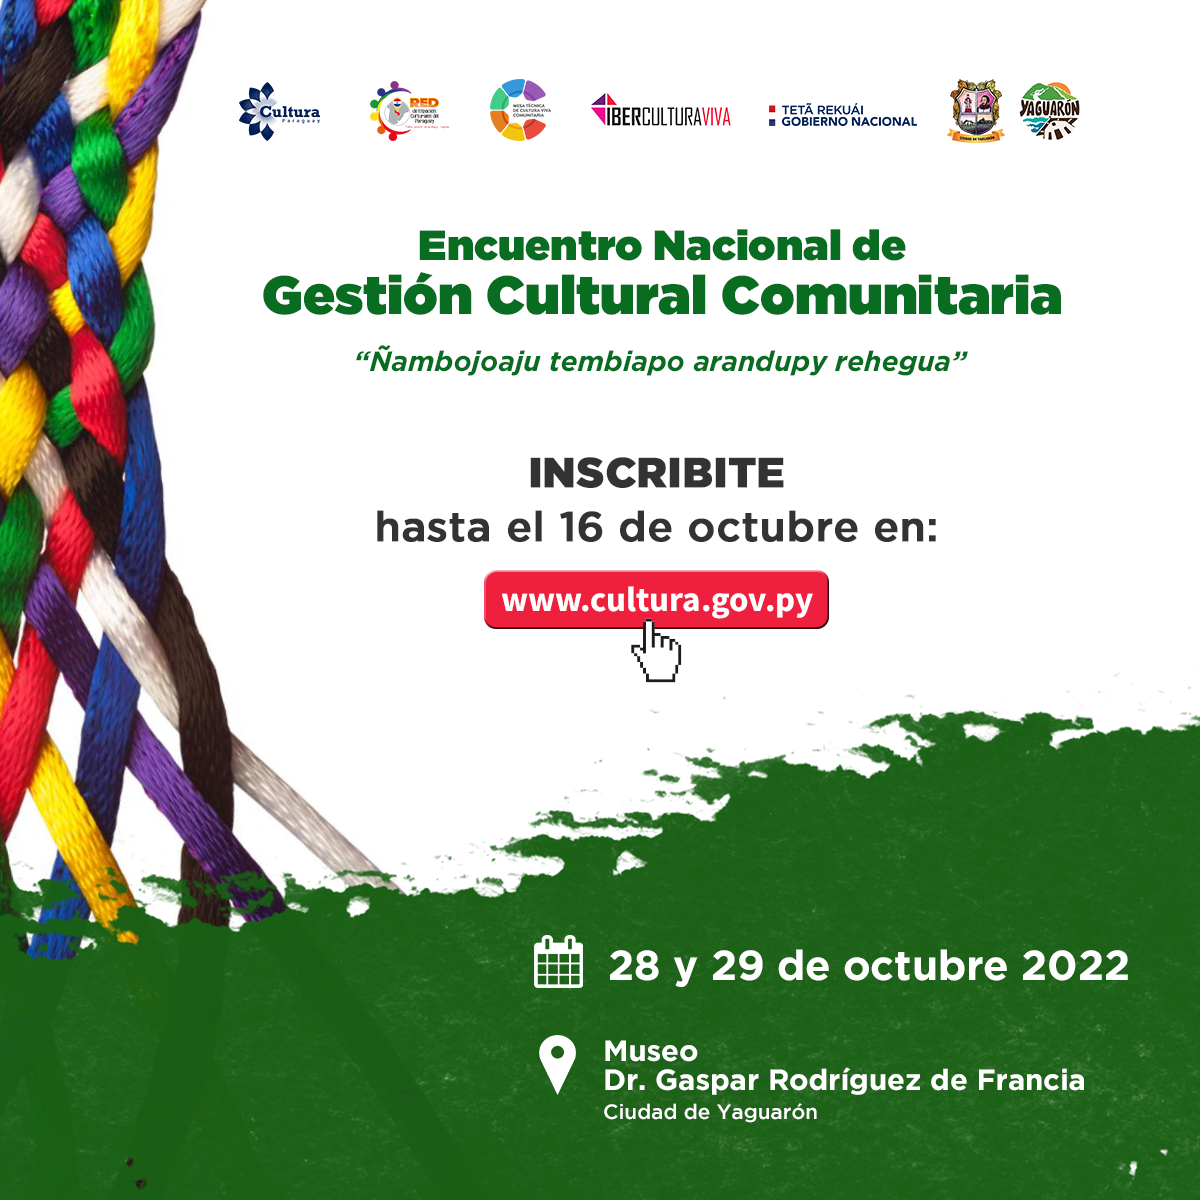 Se habilitan 80 plazas gratuitas para el Encuentro Nacional de Gestión Cultural Comunitaria del Paraguay imagen